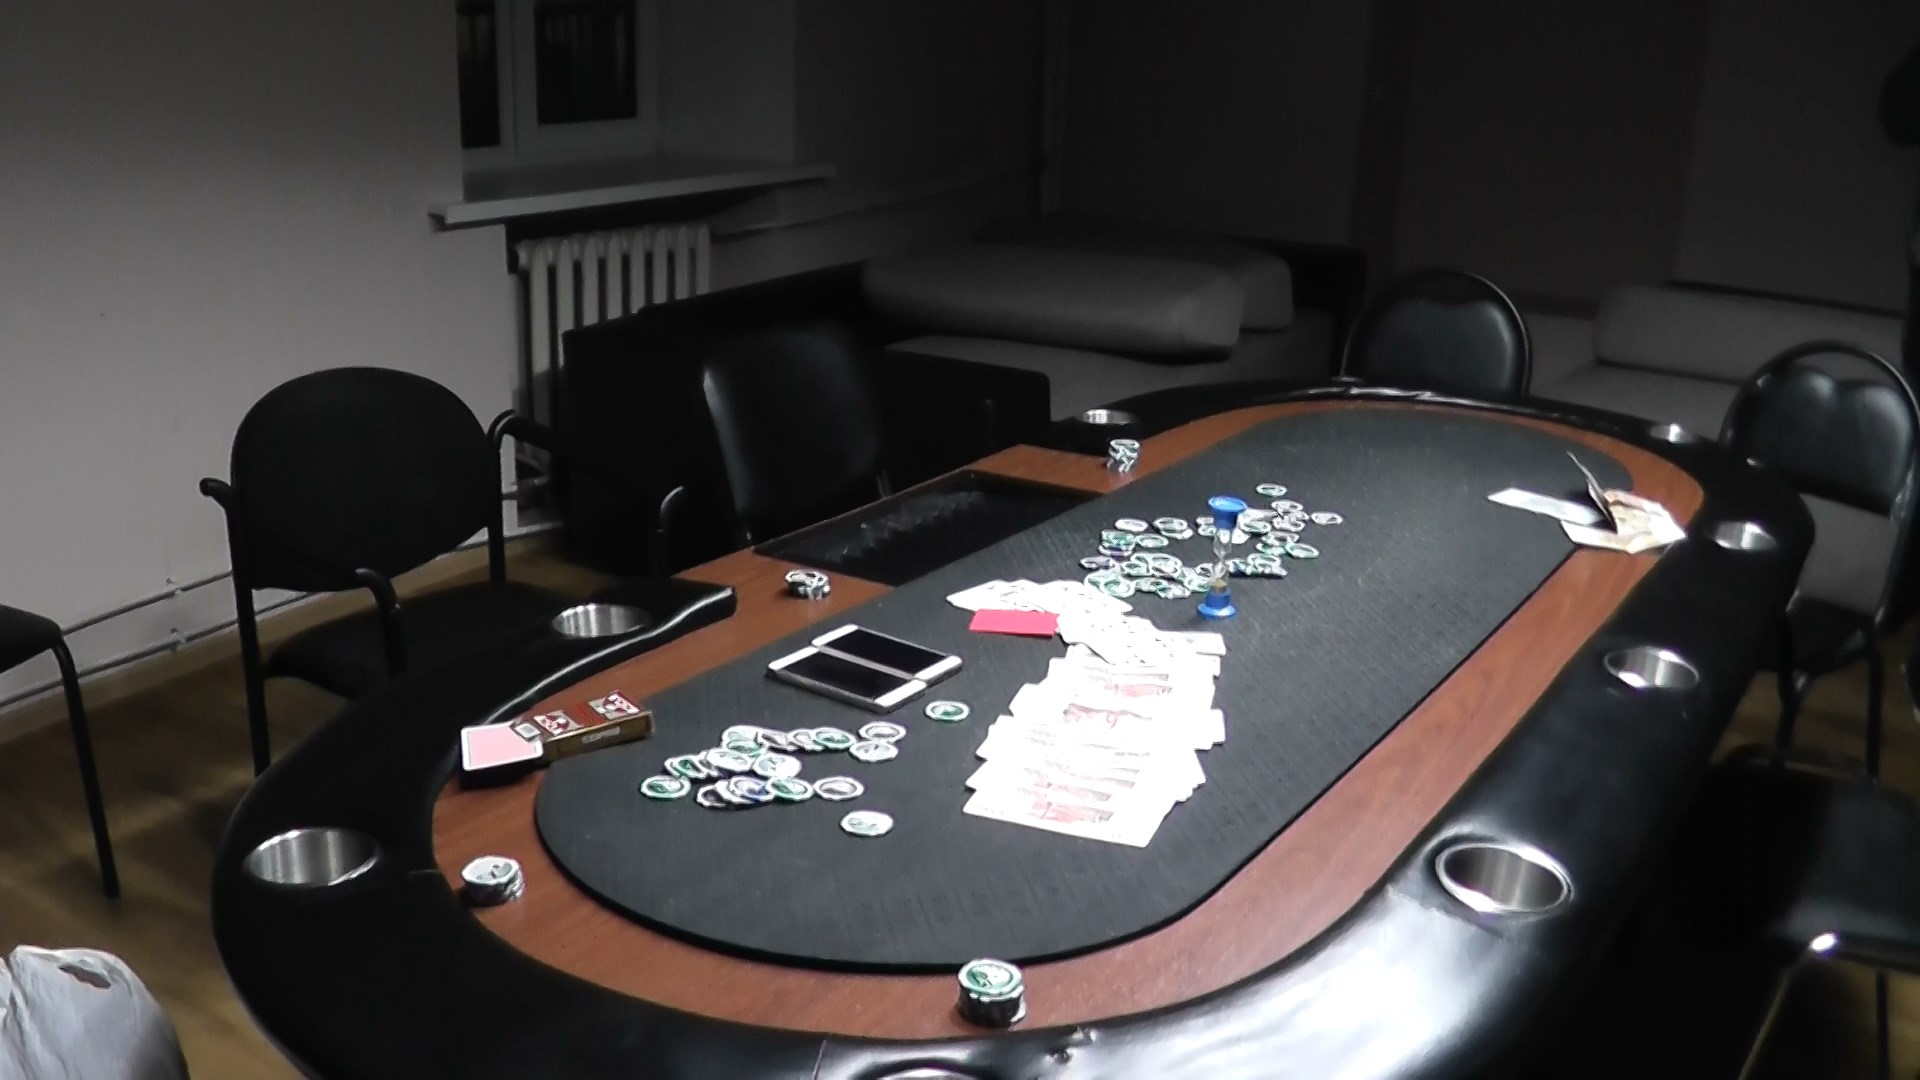 Карты вскрыты: в Брянске прикрыли частный покер-клуб